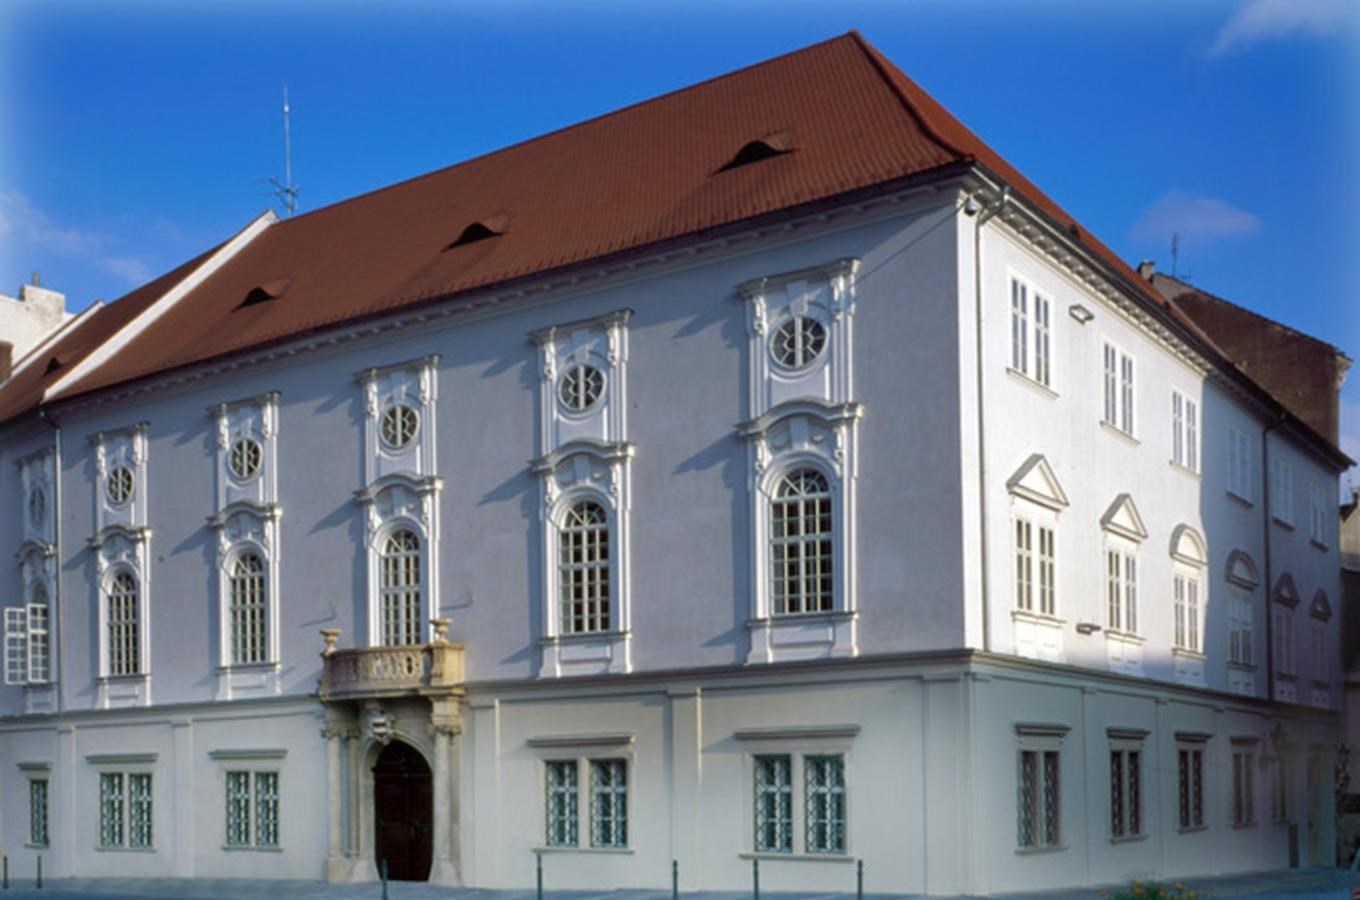 Divadlo Reduta v Brně - nejstarší divadelní budova ve střední Evropě